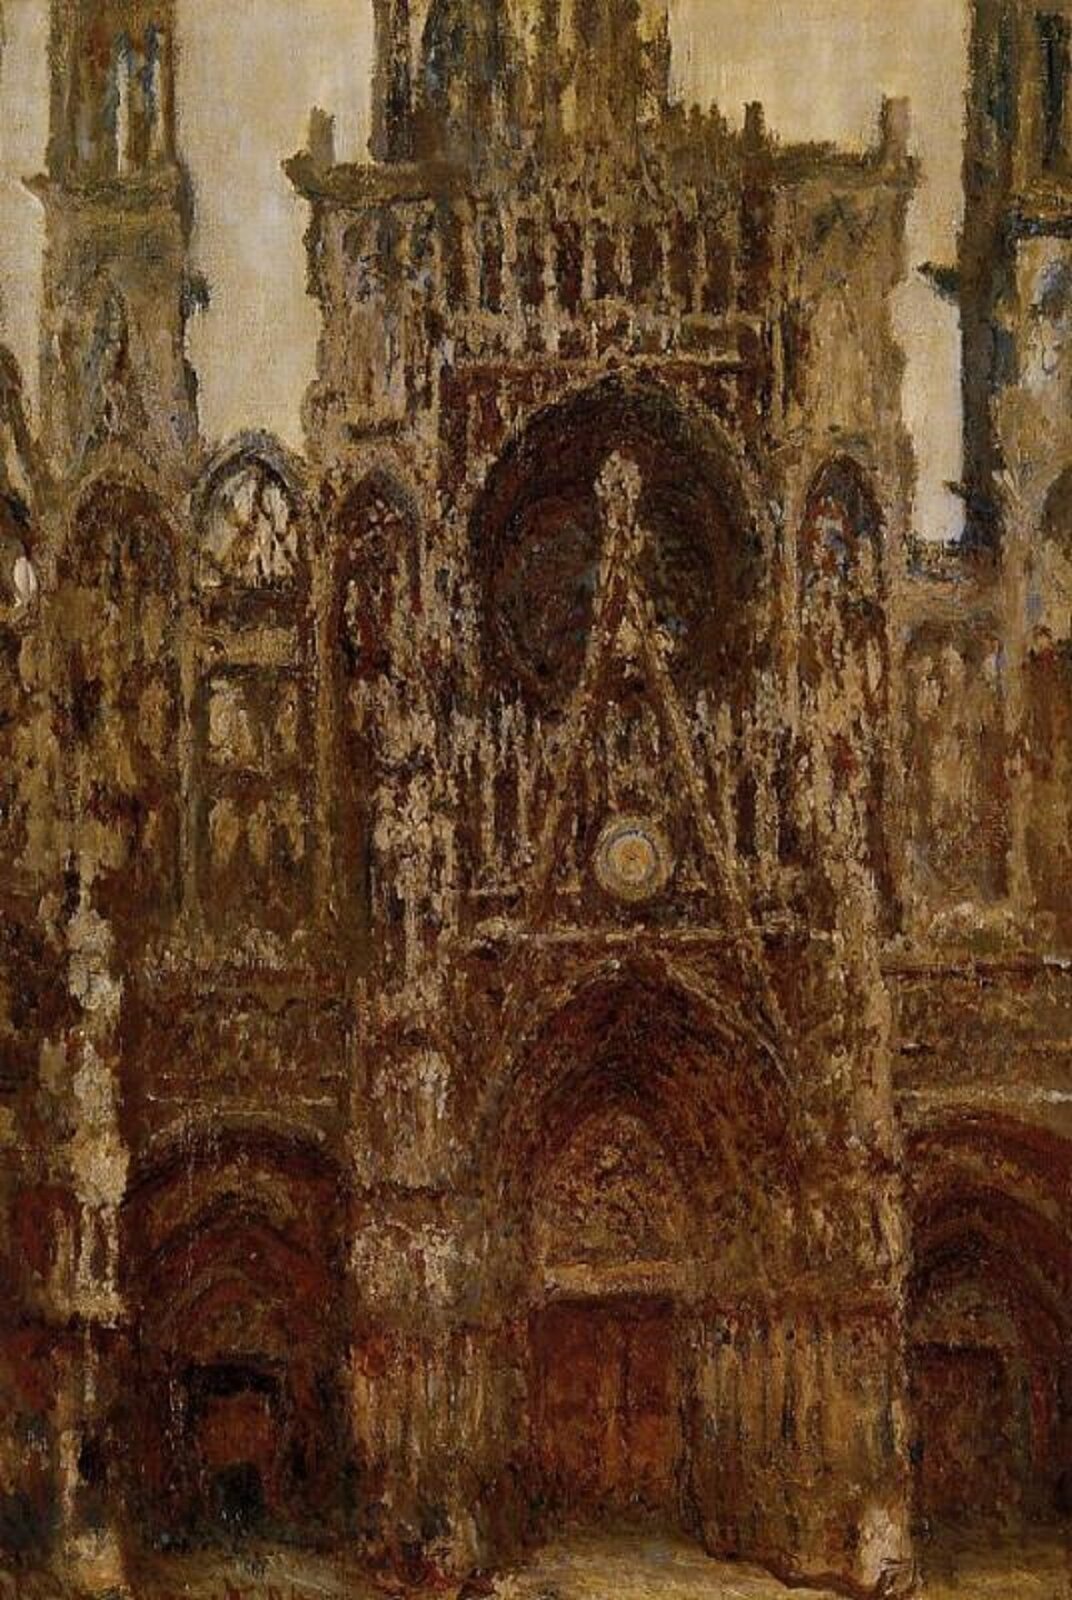 Ilustracja przedstawia obraz Claude Moneta pod tytułem „Katedra w Rouen”. Ukazuje ona front gotyckiej katedry w Rouen w odcieniach brązu i beżu.